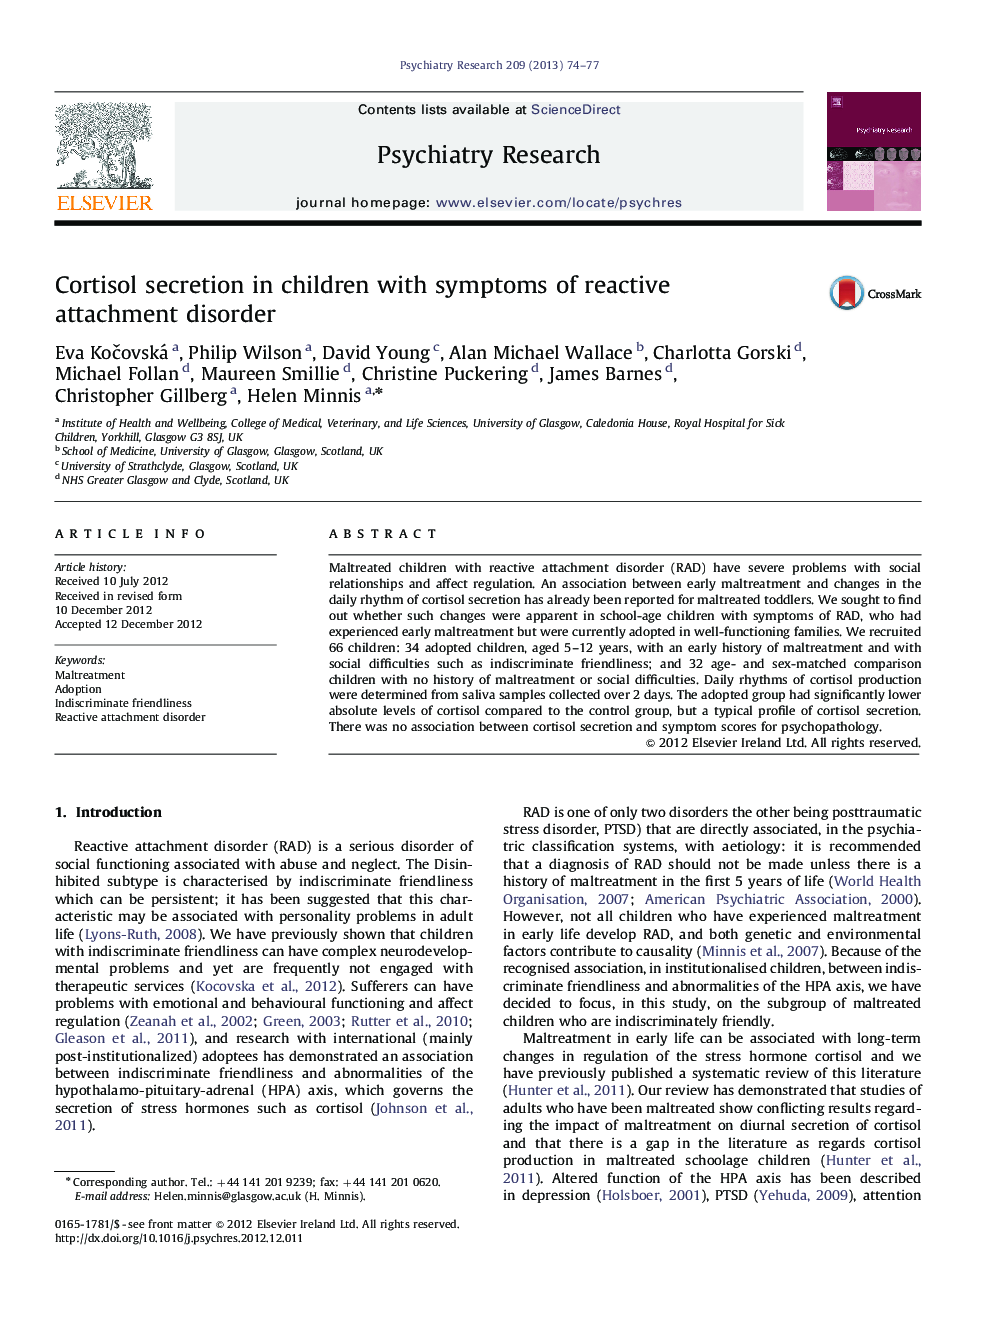 ترشح کورتیزول در کودکان مبتلا به اختلال دلبستگی واکنشی 